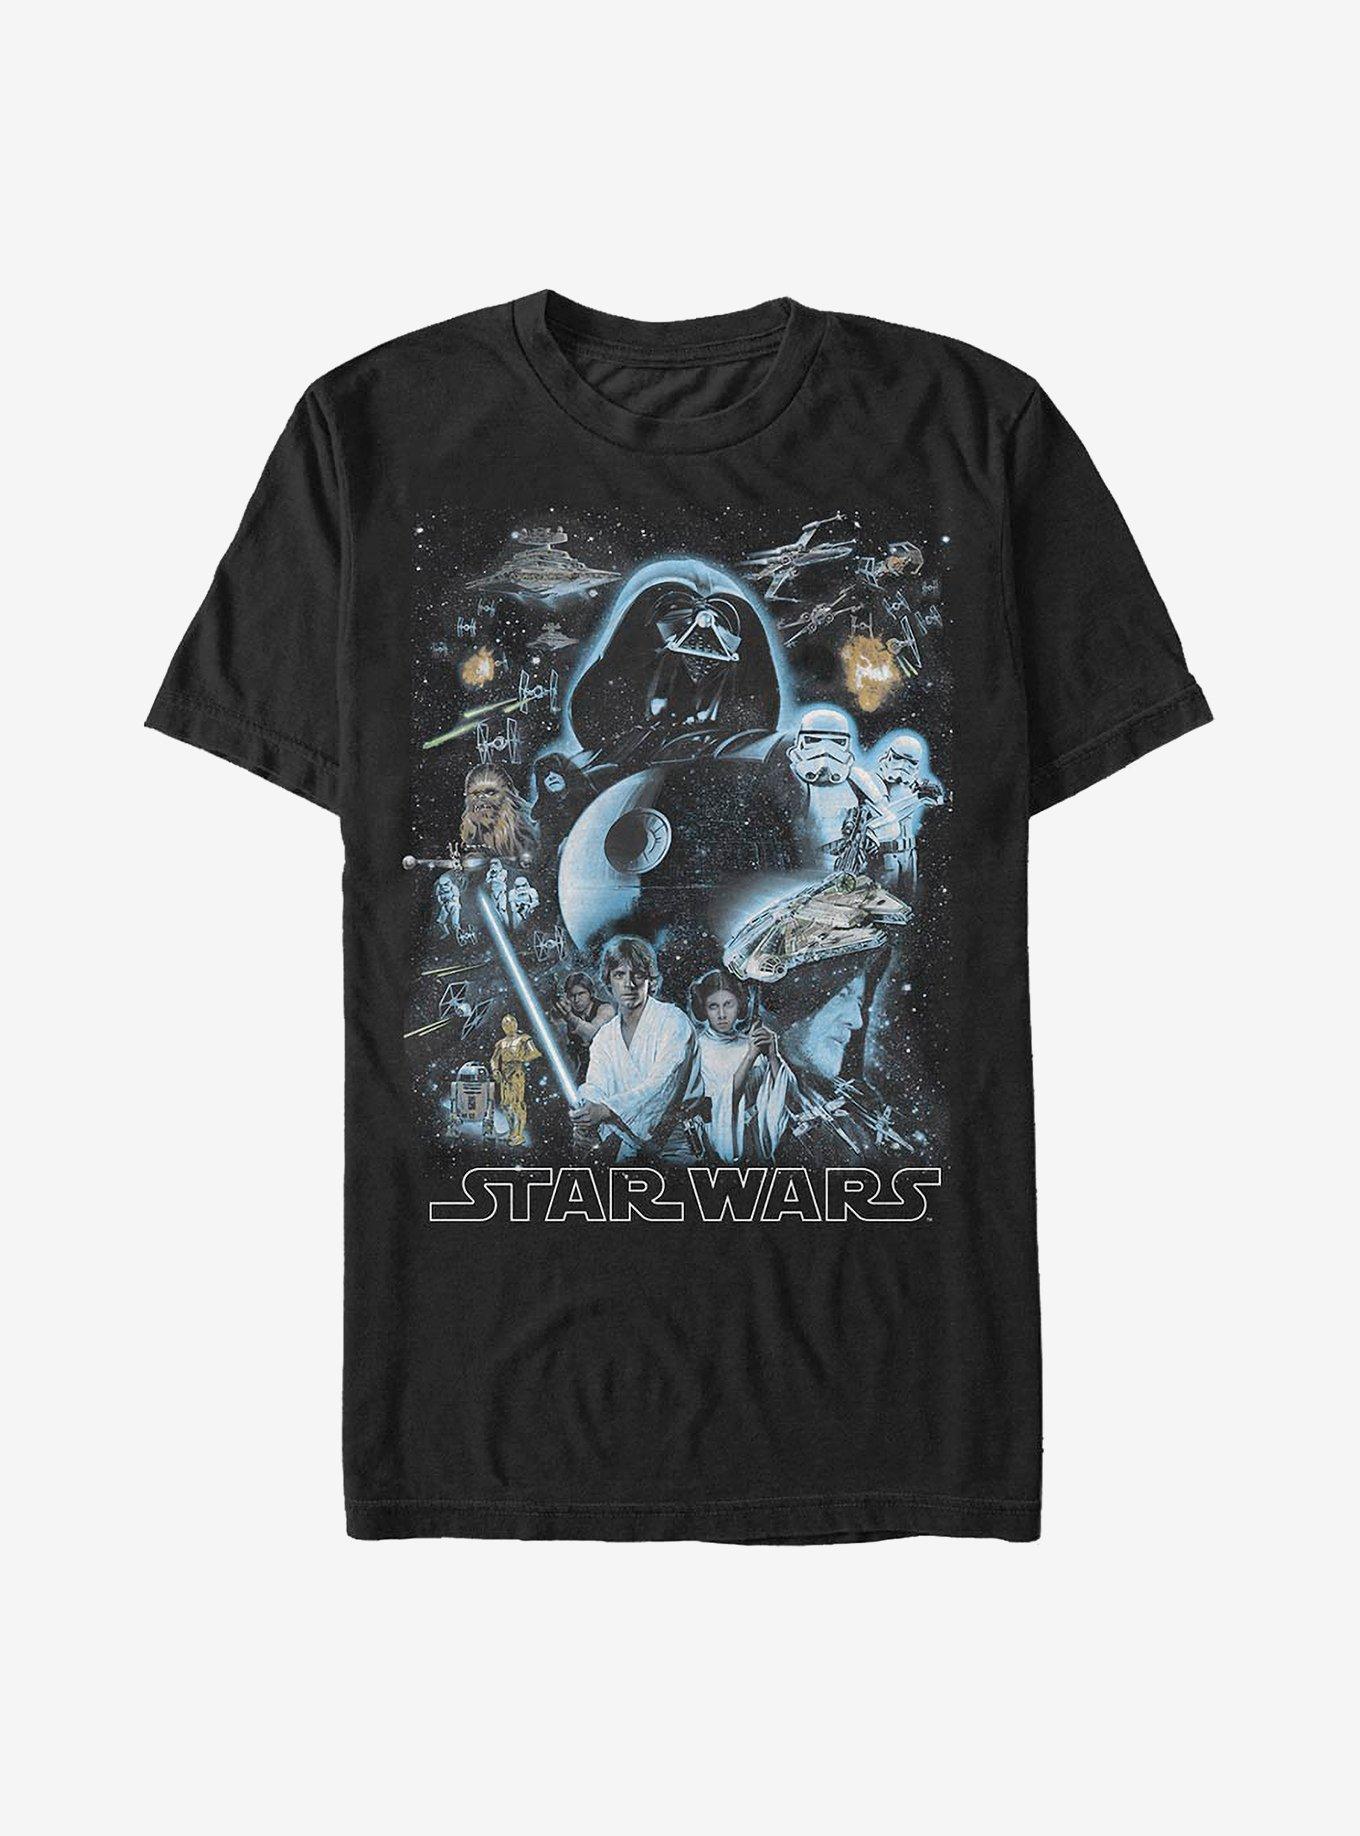 Star Wars Galaxy Of Stars T-Shirt, BLACK, hi-res